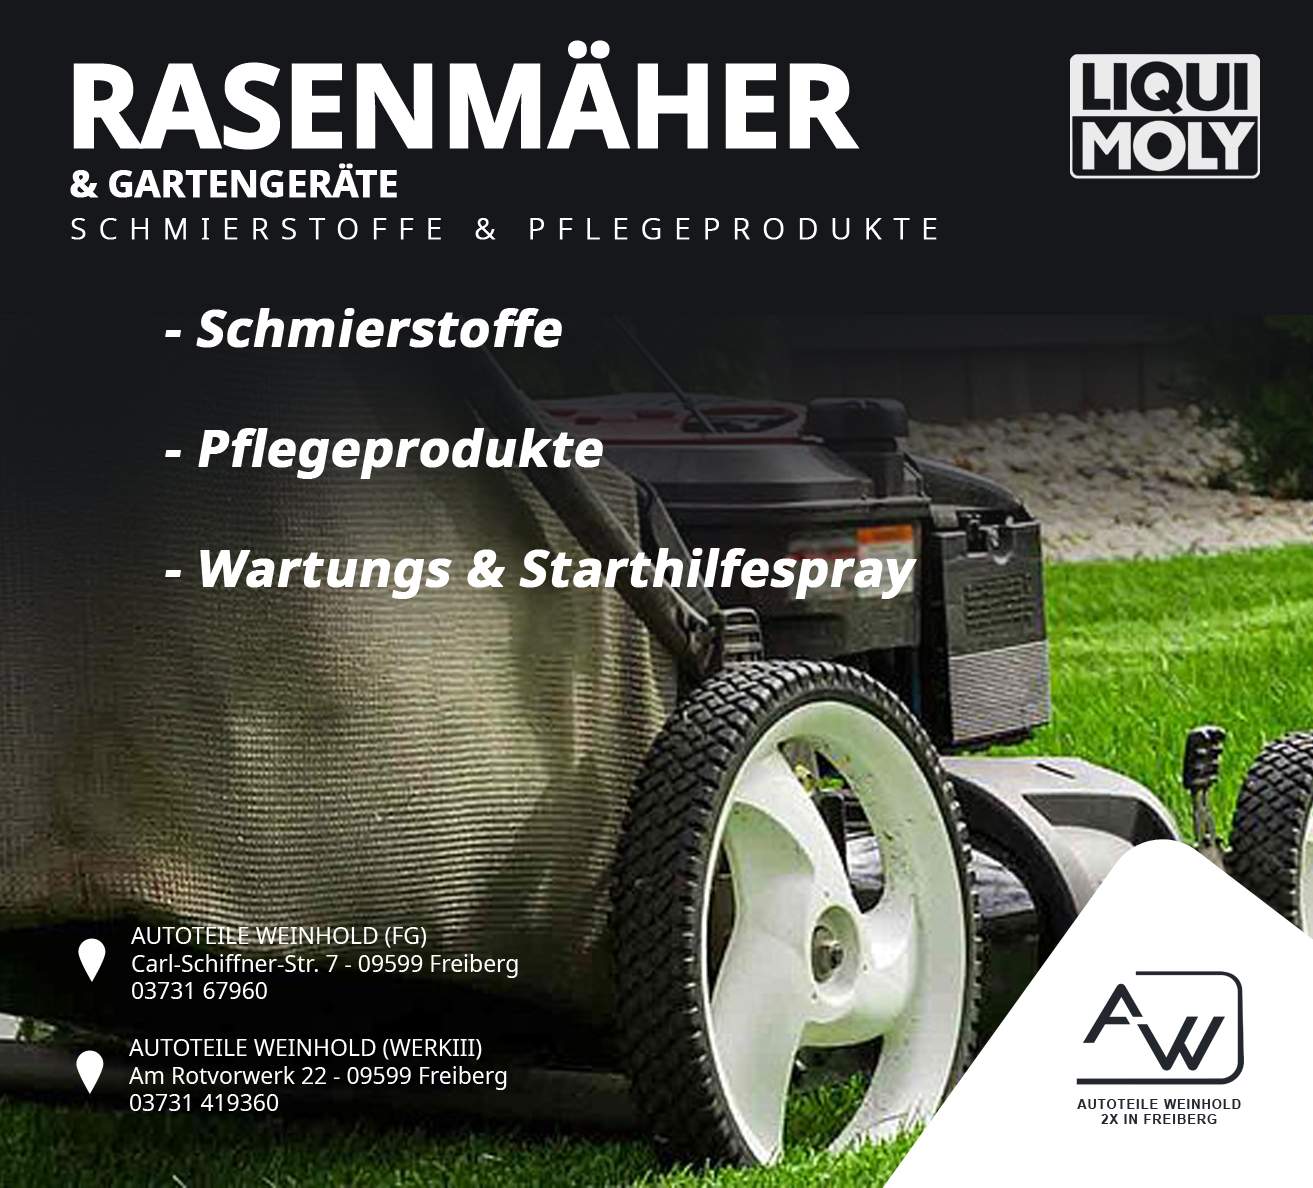 You are currently viewing Liqui Moly Schmierstoffe und Pflegeprodukte für Rasenmäher & Gartengeräte